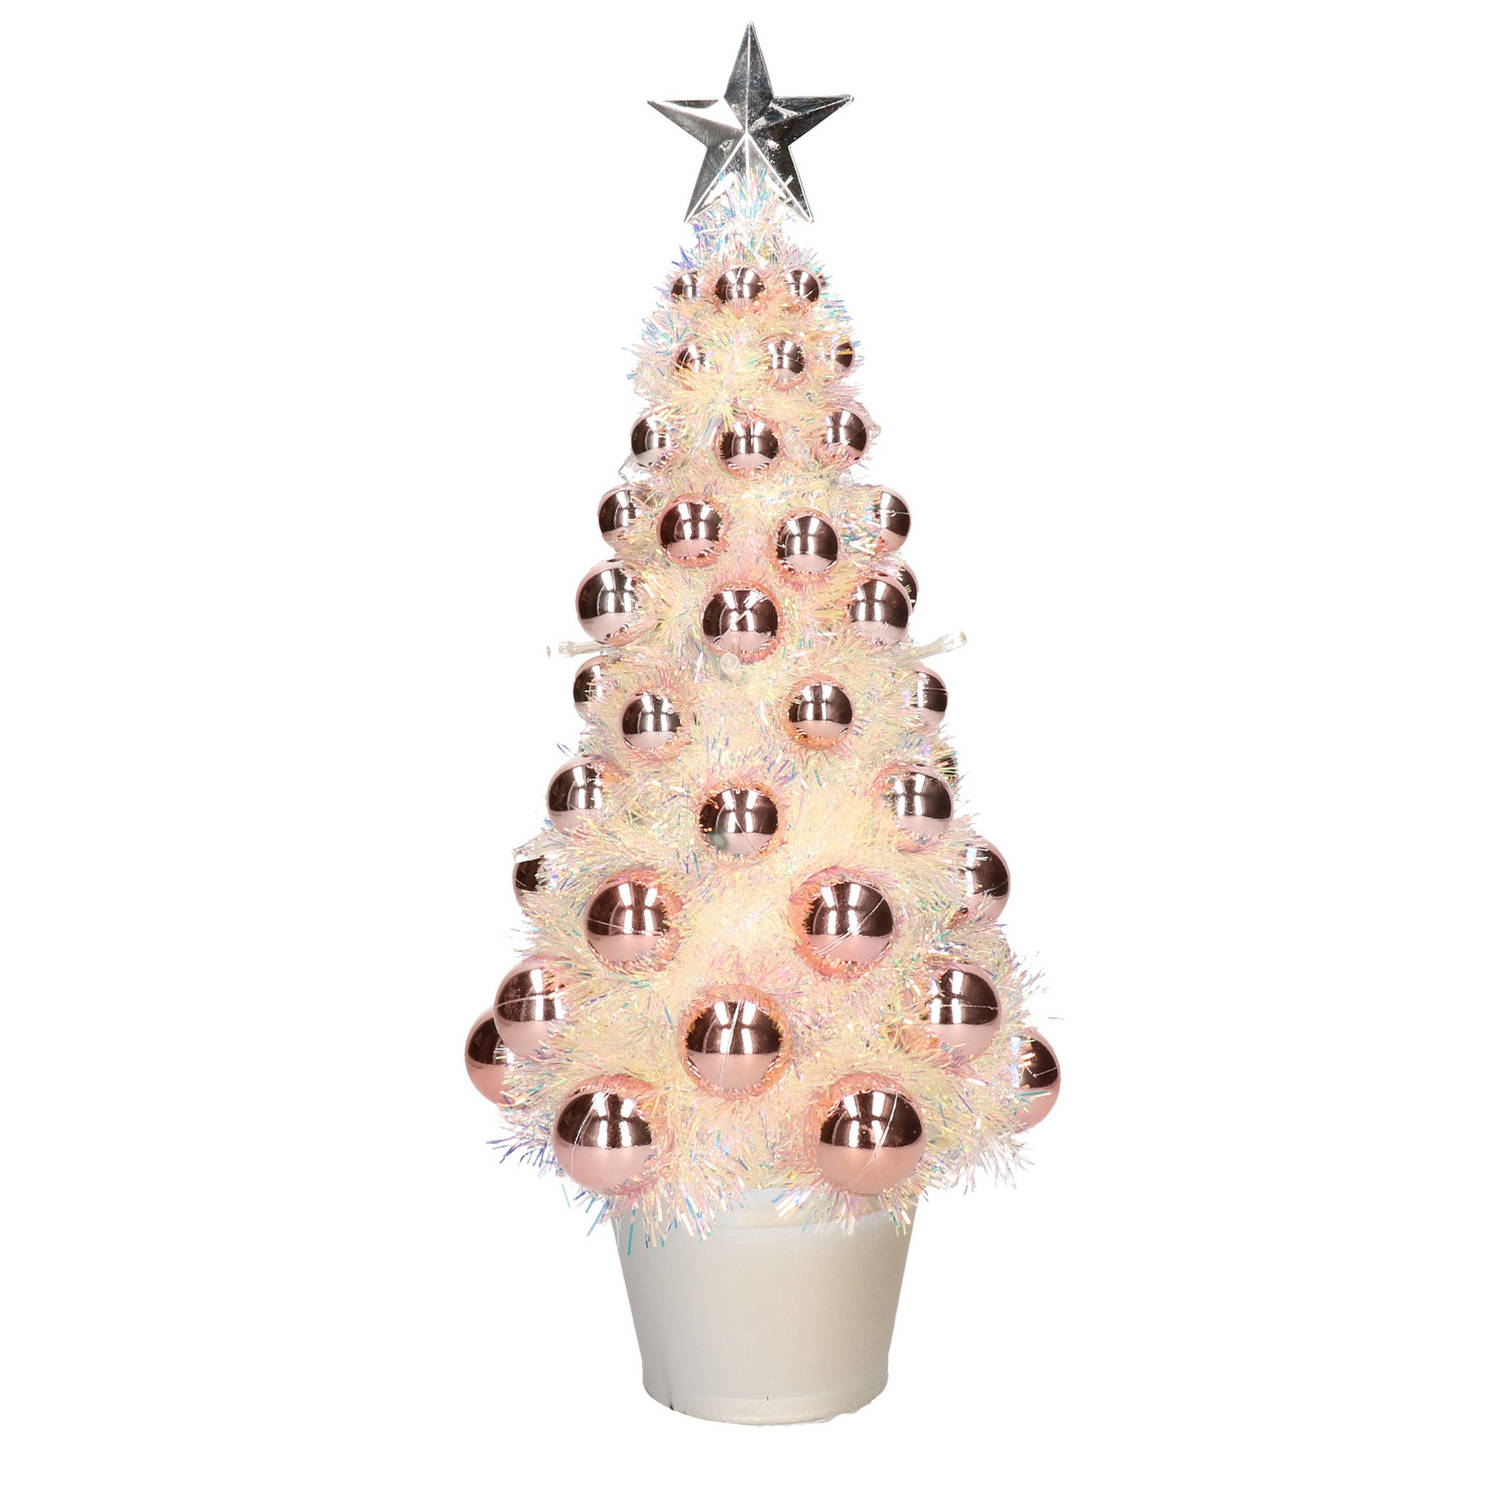 Complete Mini Kunst Kerstboom-Kunstboom Zalmroze Met Lichtjes 40 Cm Kunstkerstboom